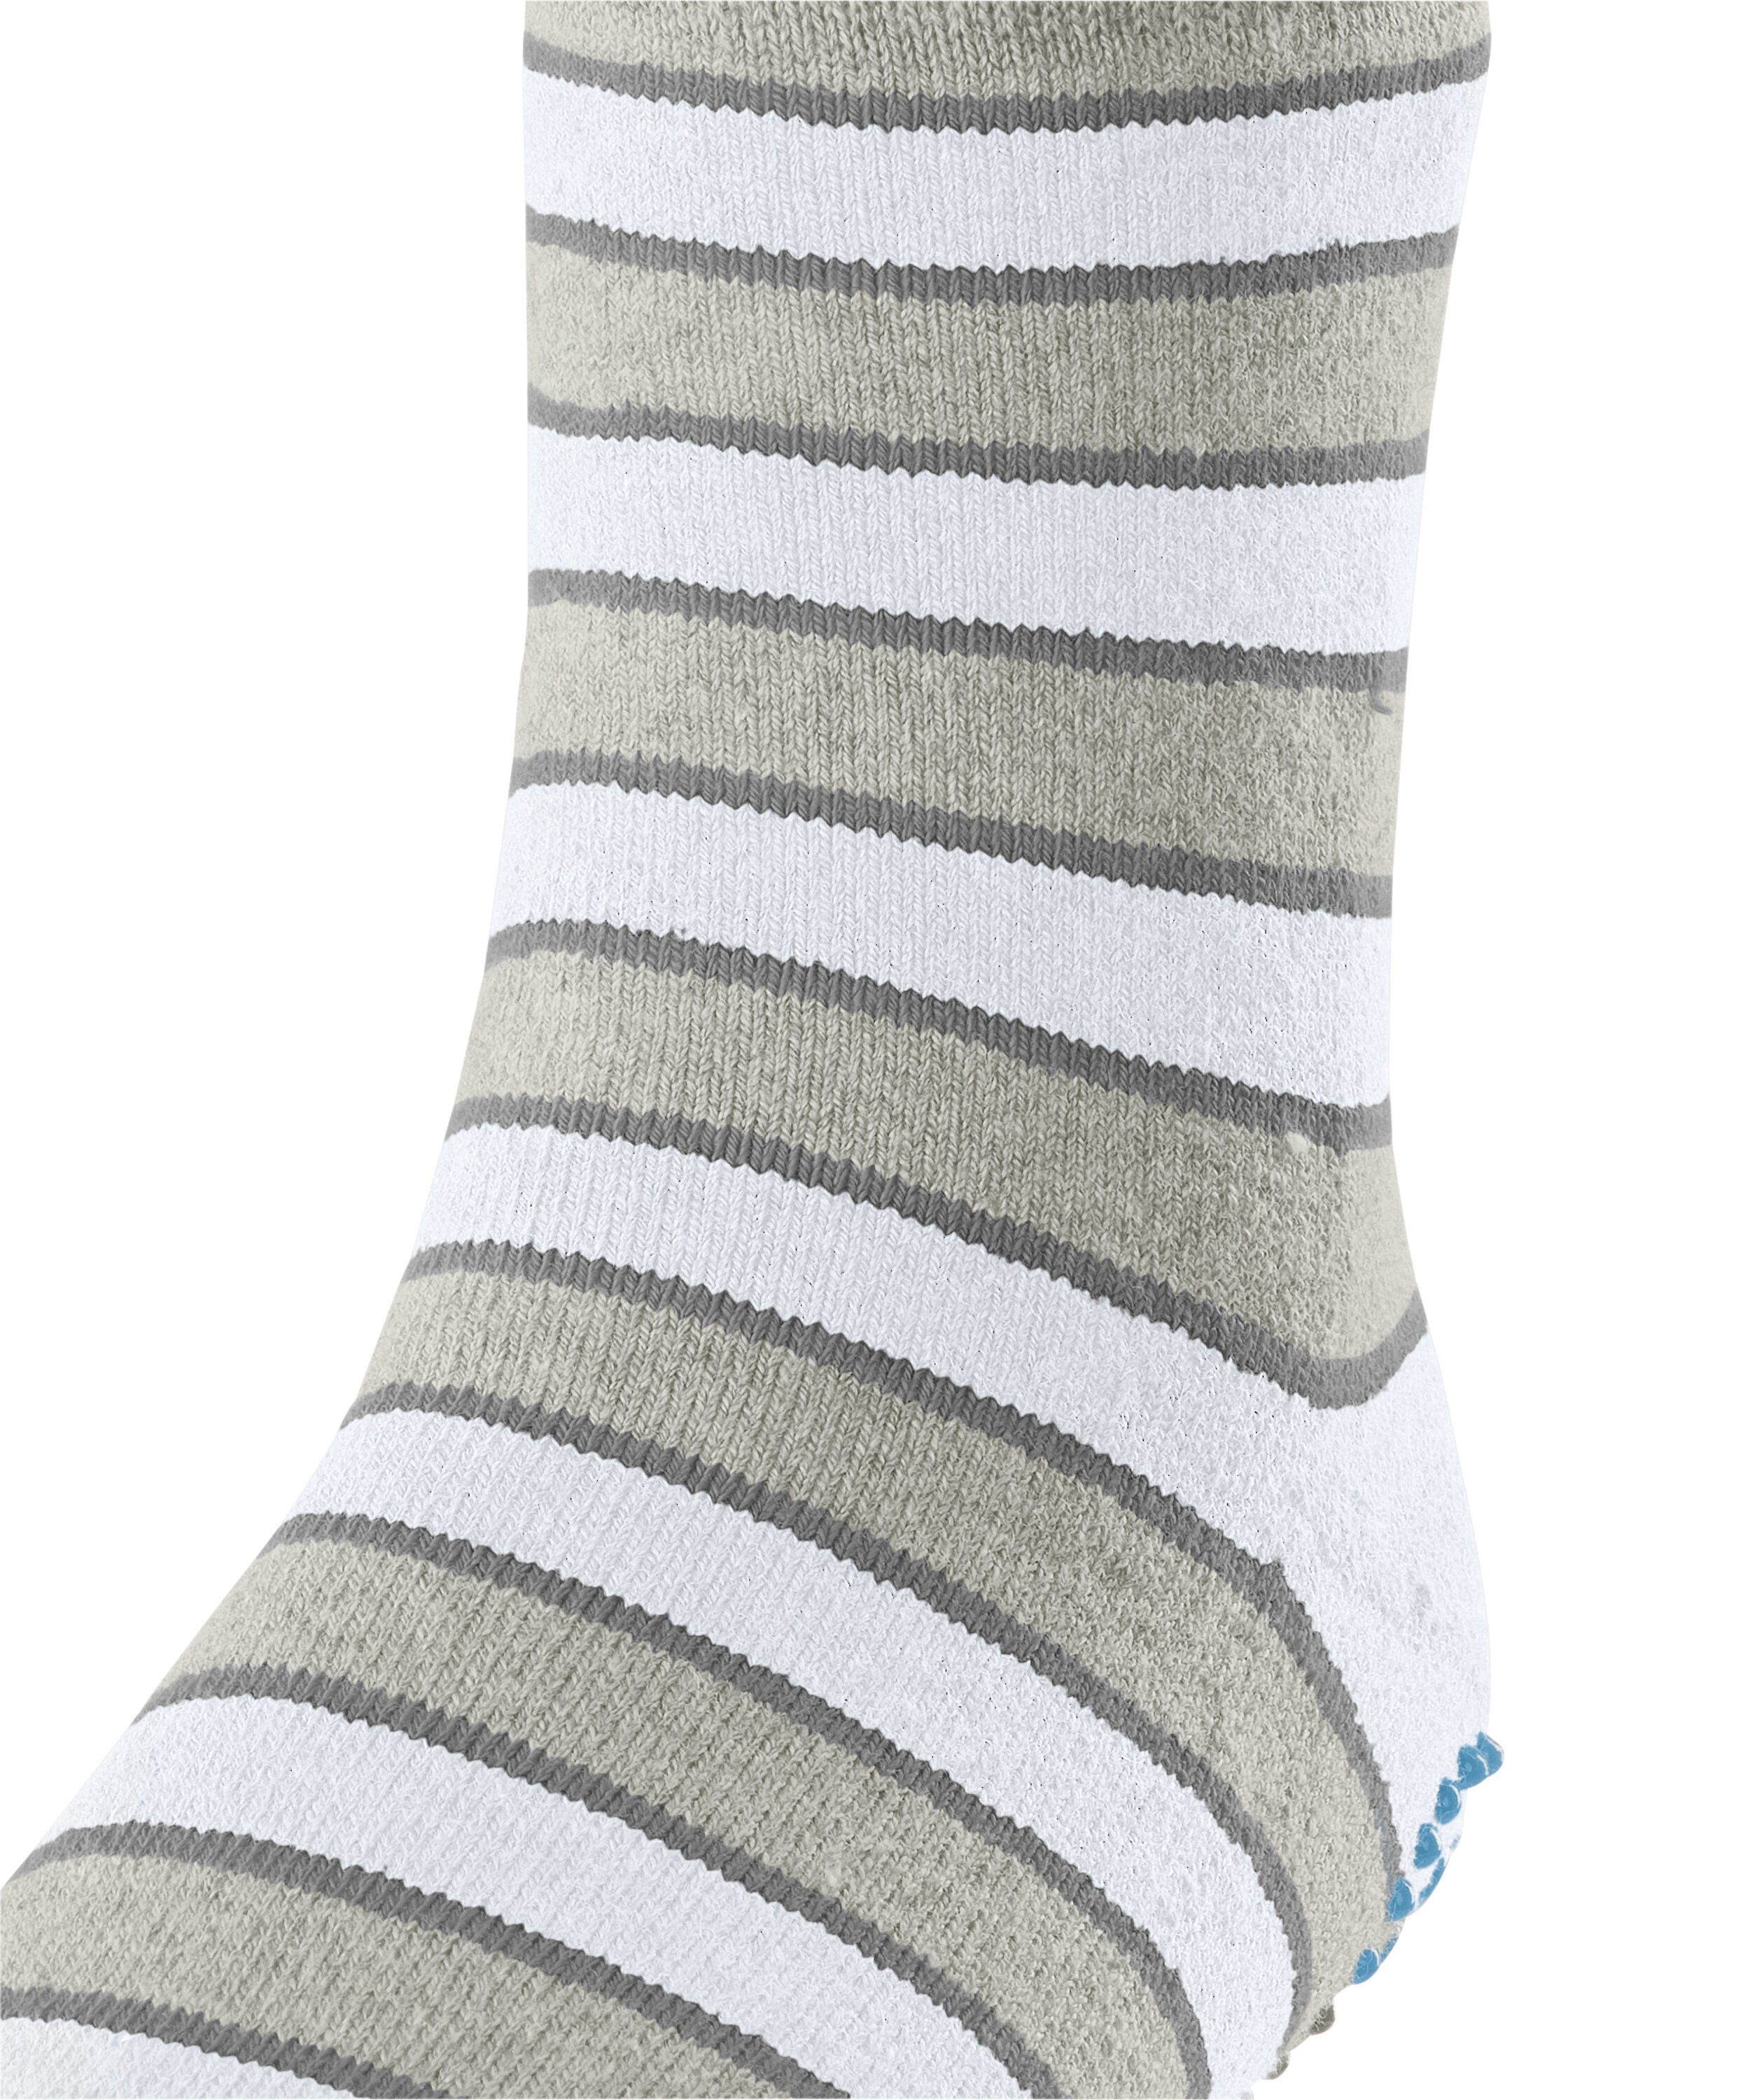 grey Simple Socken FALKE (3820) Stripes storm (1-Paar)